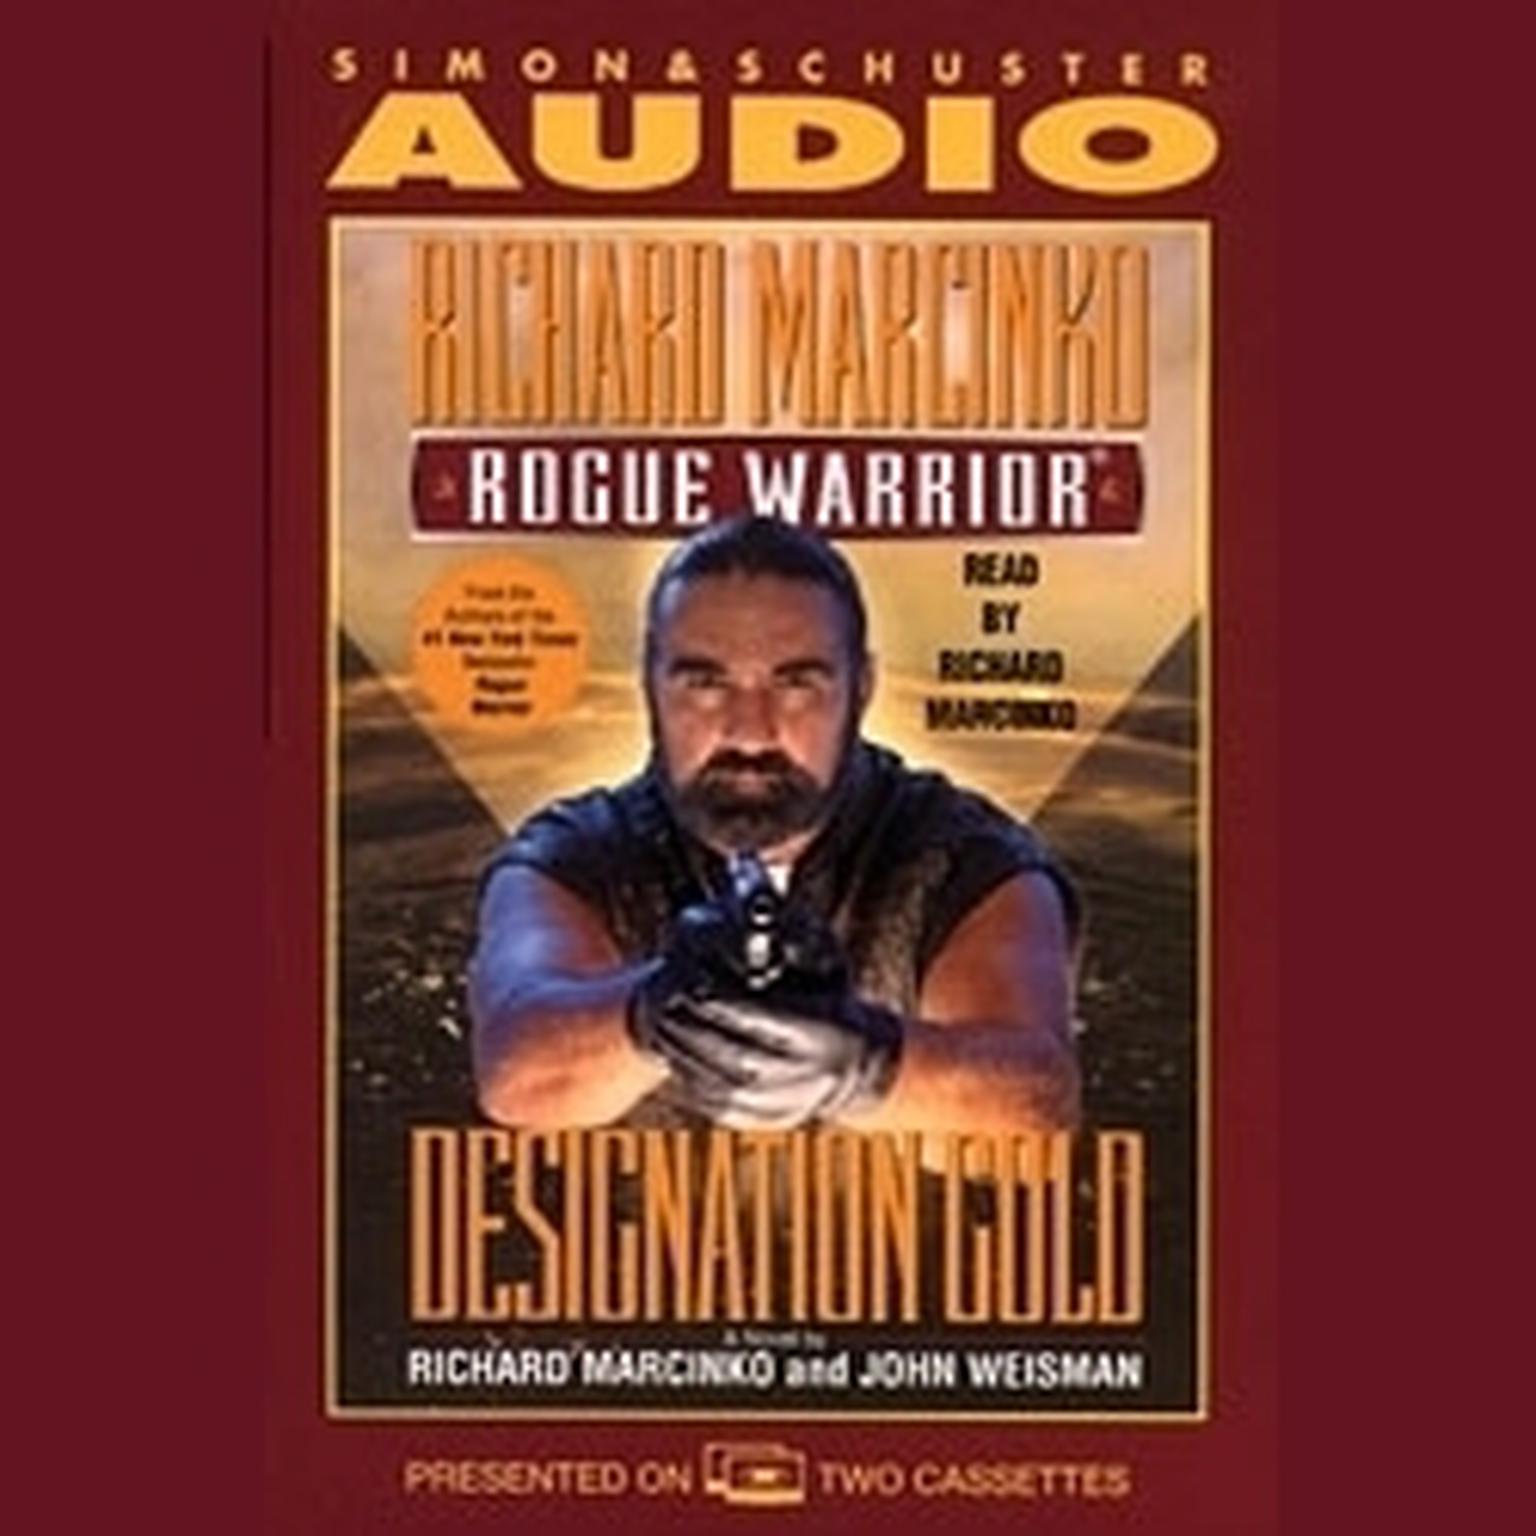 Rogue Warrior: Designation Gold (Abridged) Audiobook, by John Weisman